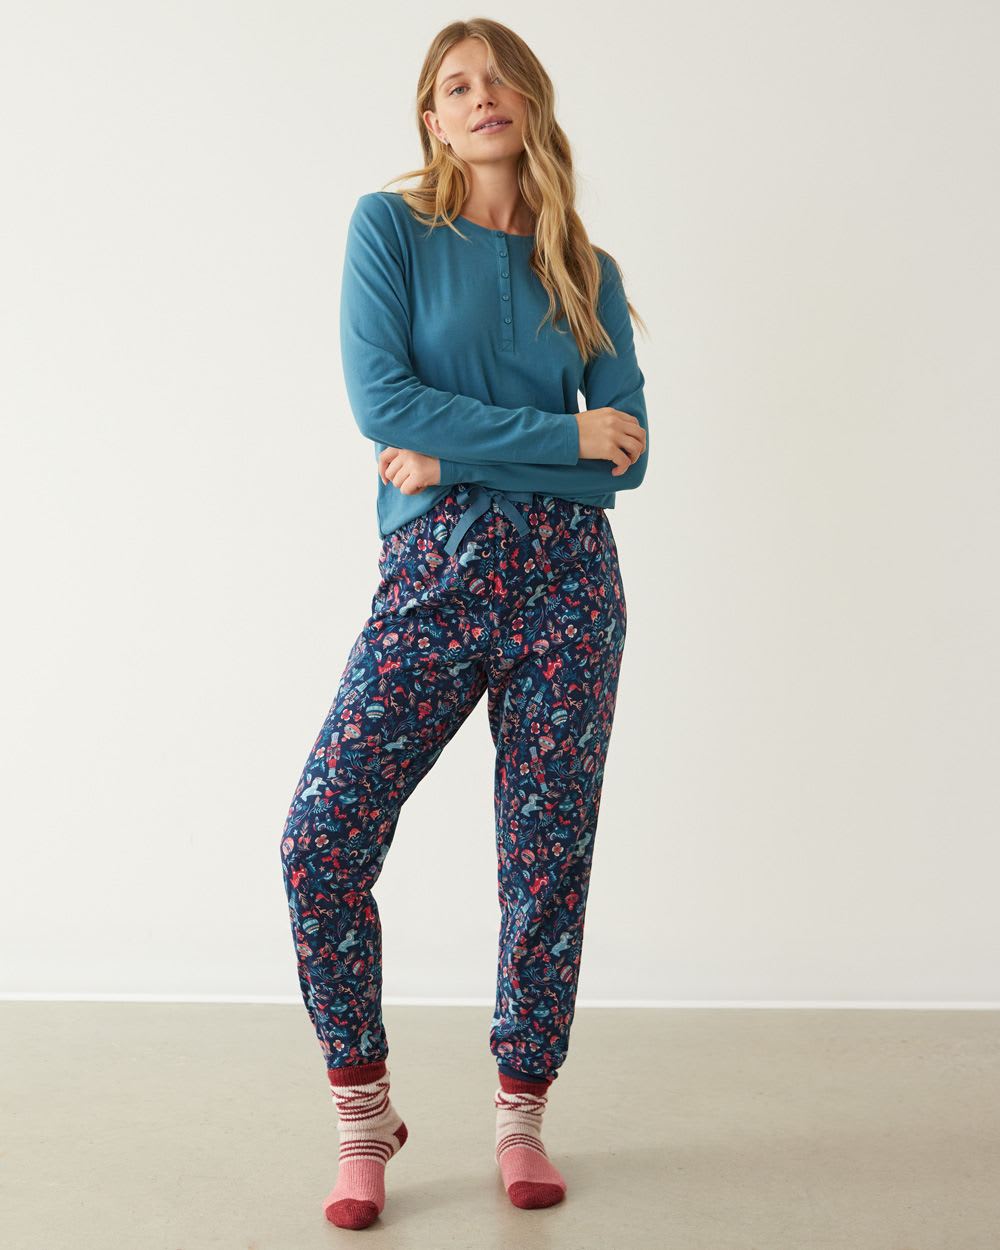 Long-Sleeve Top and Jogger Cotton Pyjama Set, Regular